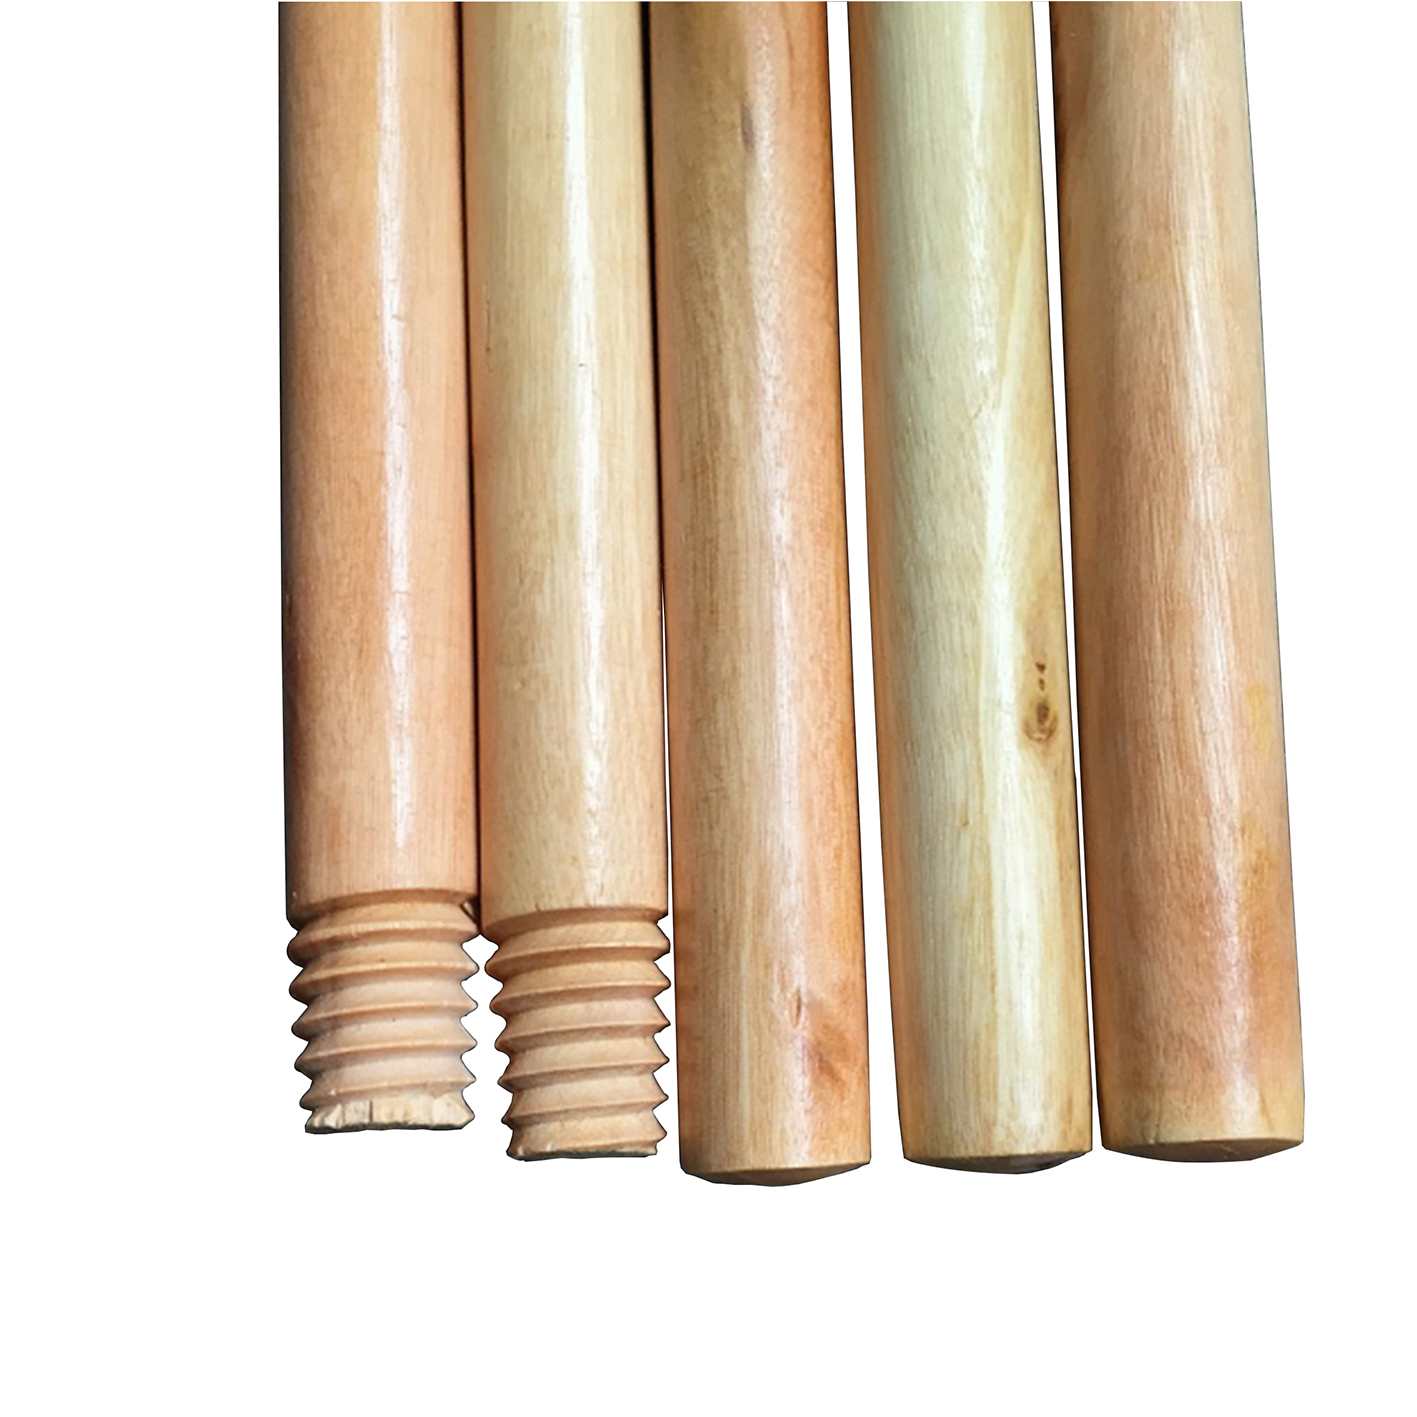 Дисплей продукта - Деревянная ручка для метлы, покрытая лаком